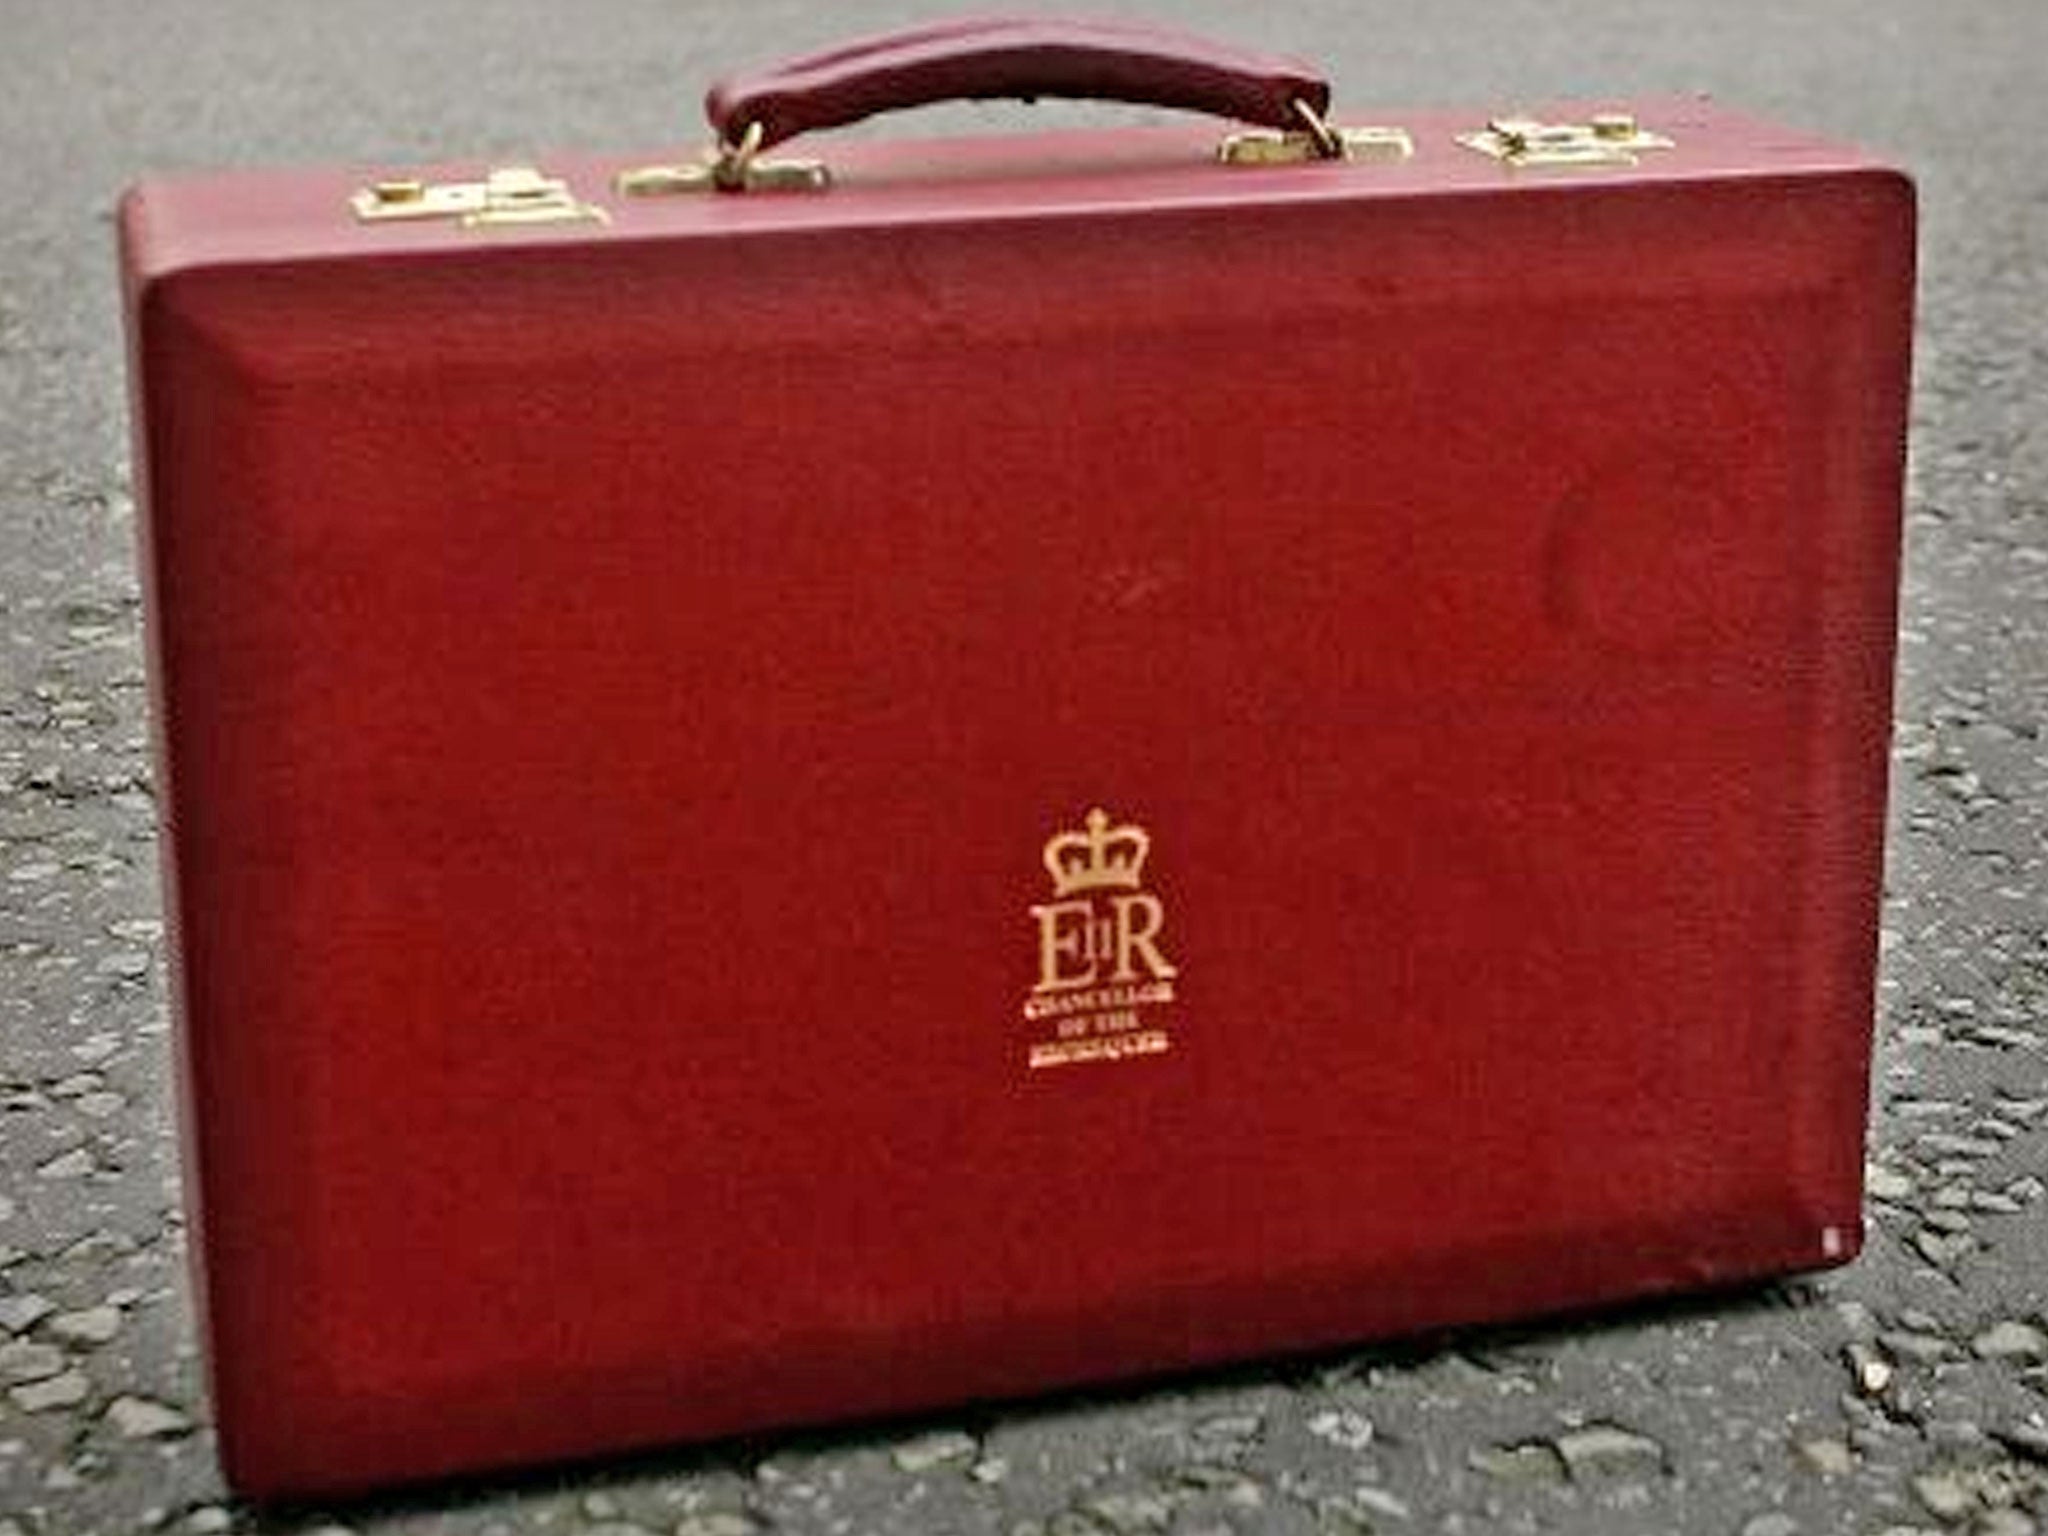 A replica of the British Chancellor's cabinet briefcase